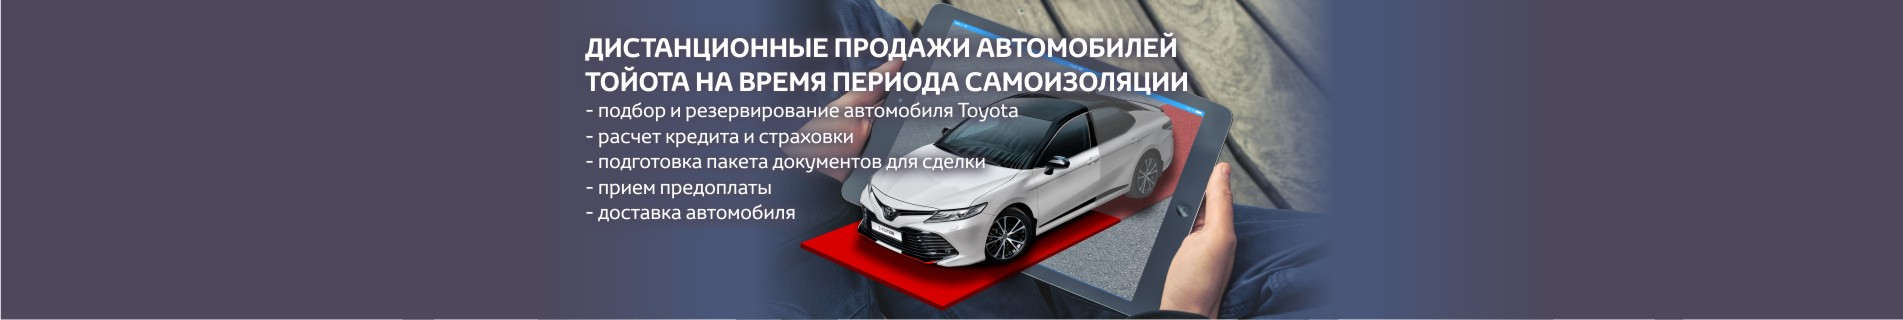 Дистанционные продажи Toyota